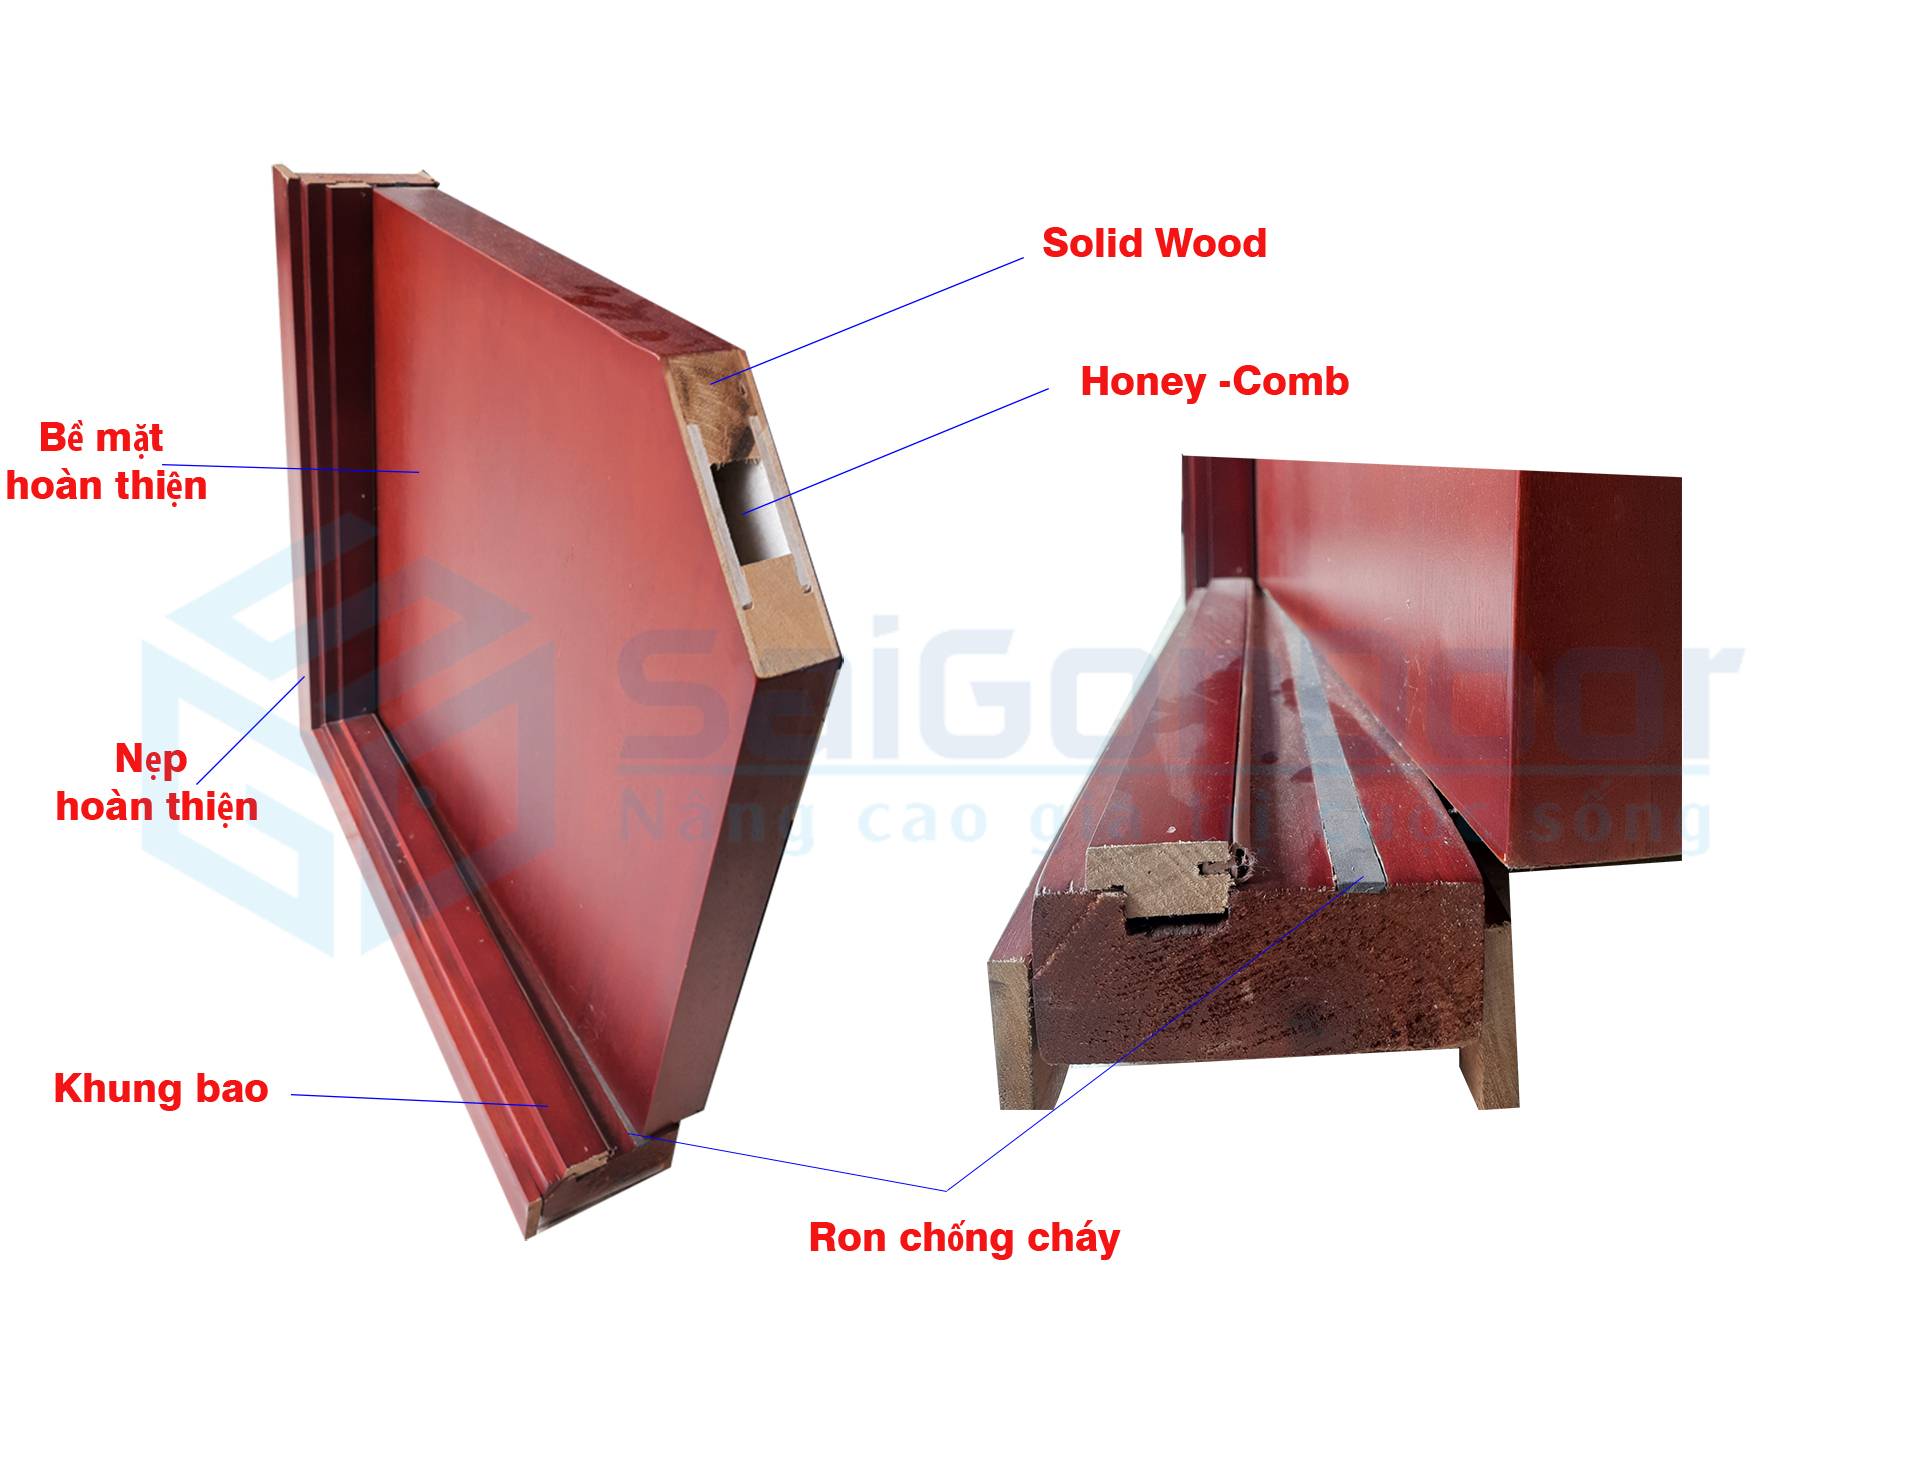 Mẫu góc cửa gỗ chống cháy dùng vật liệu chống cháy mới